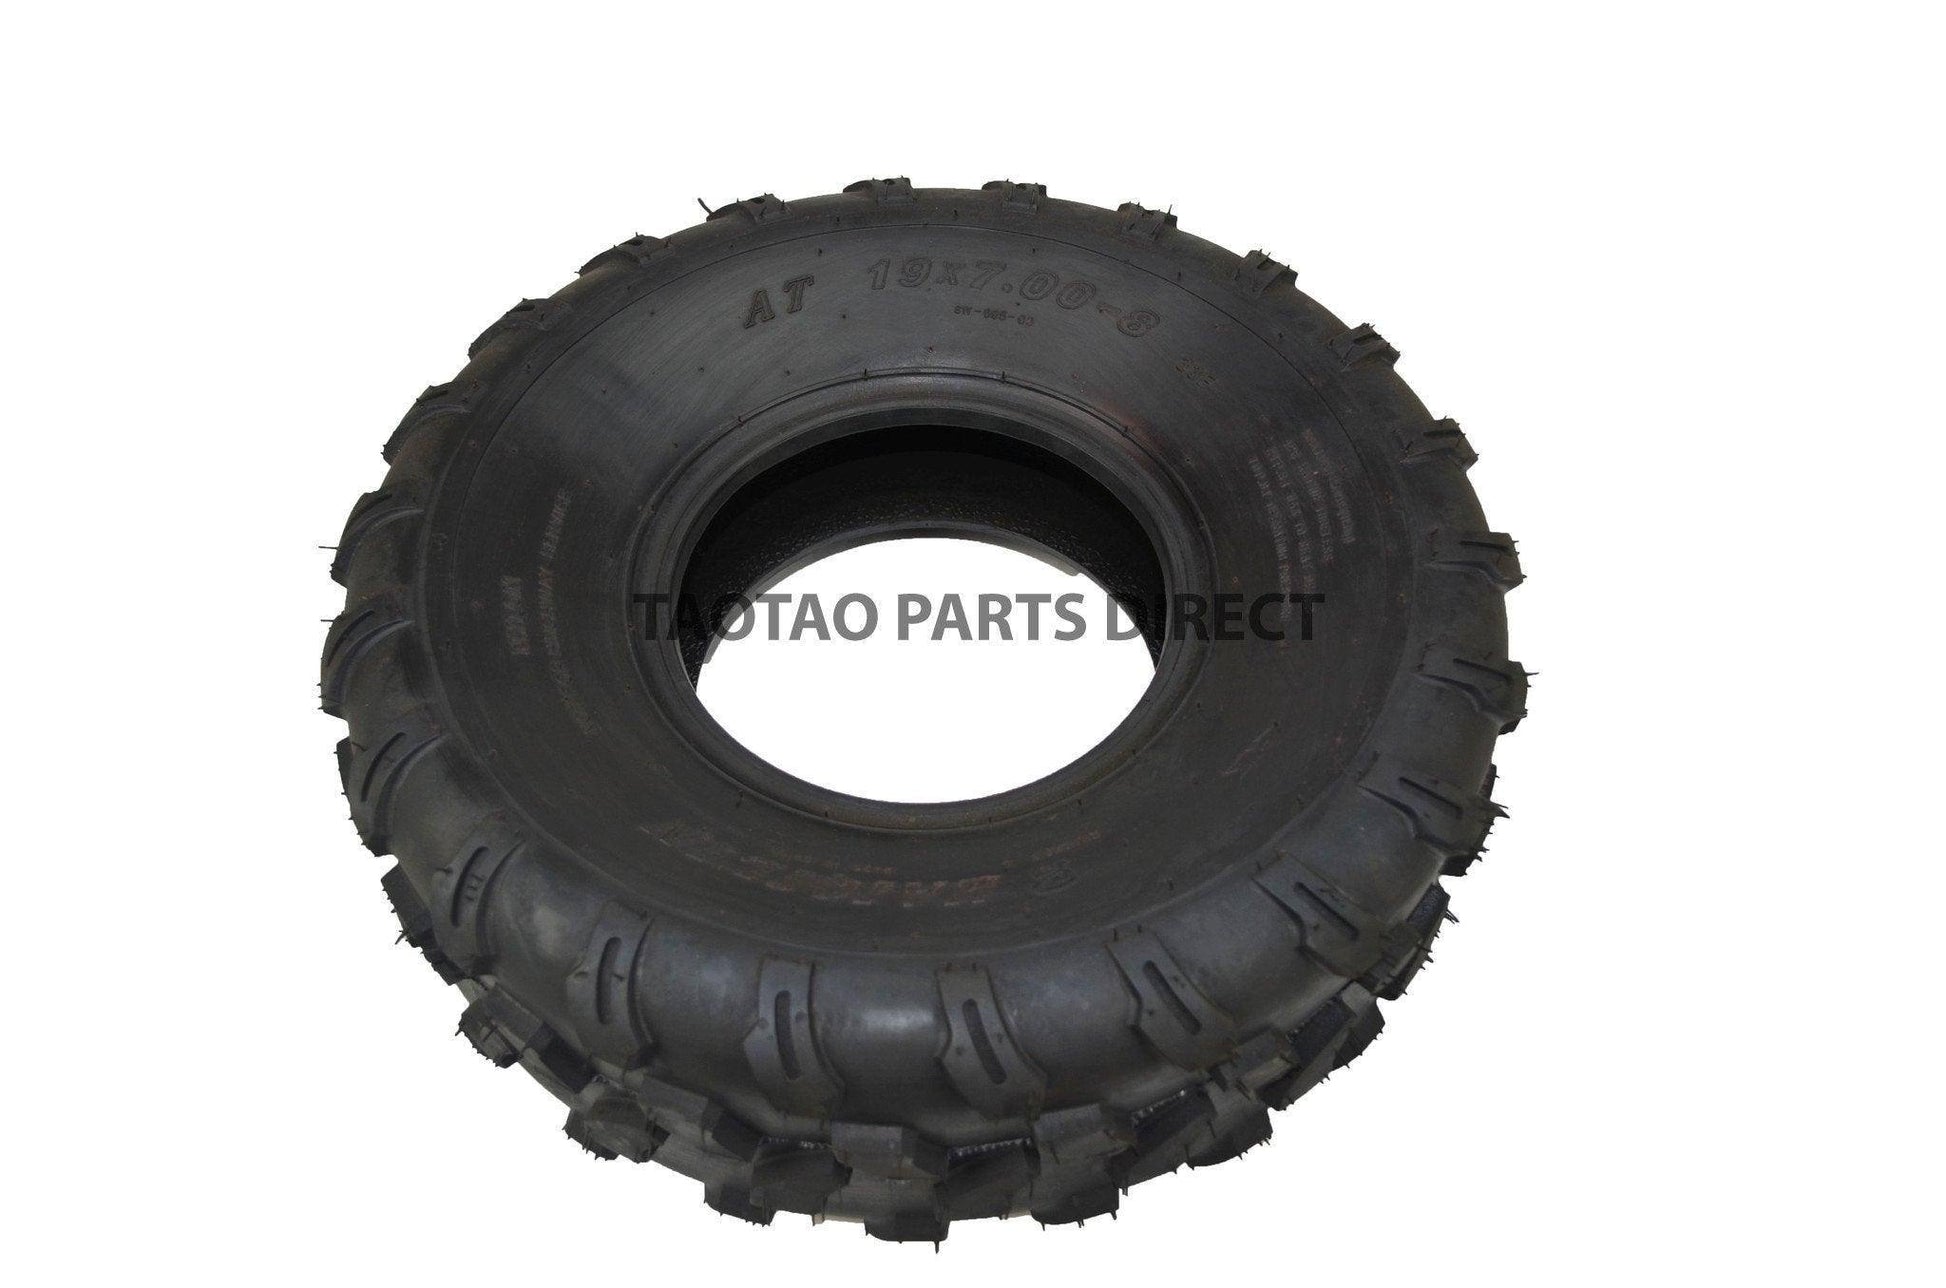 19x7-8 Tire - TaoTao Parts Direct